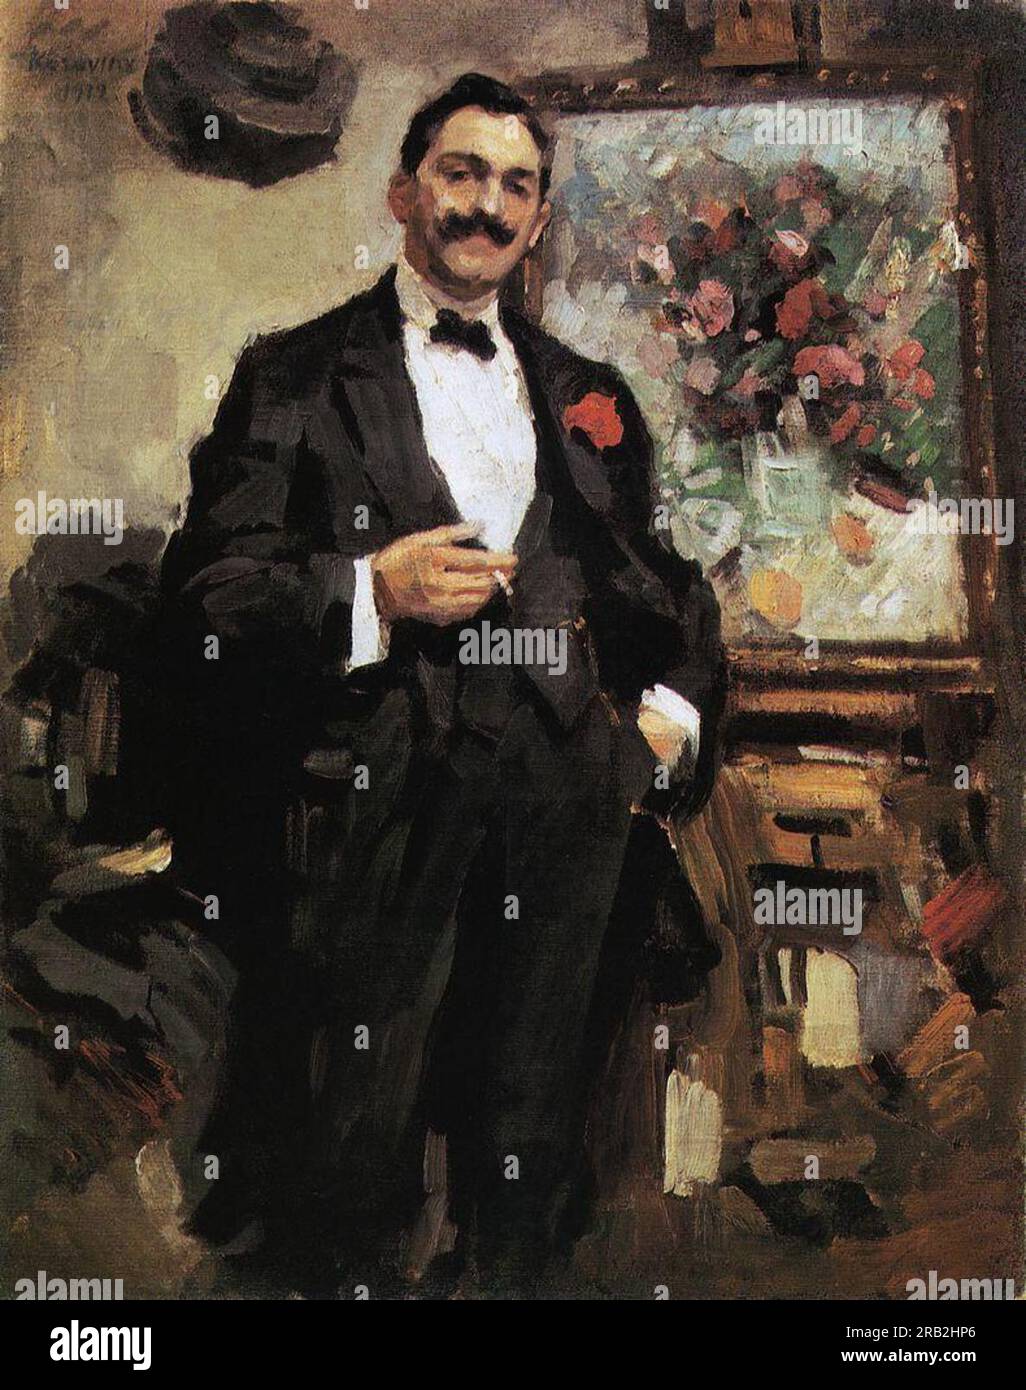 Ritratto di un artista ungherese József Ripley Ronai 1912 di Konstantin Korovin Foto Stock